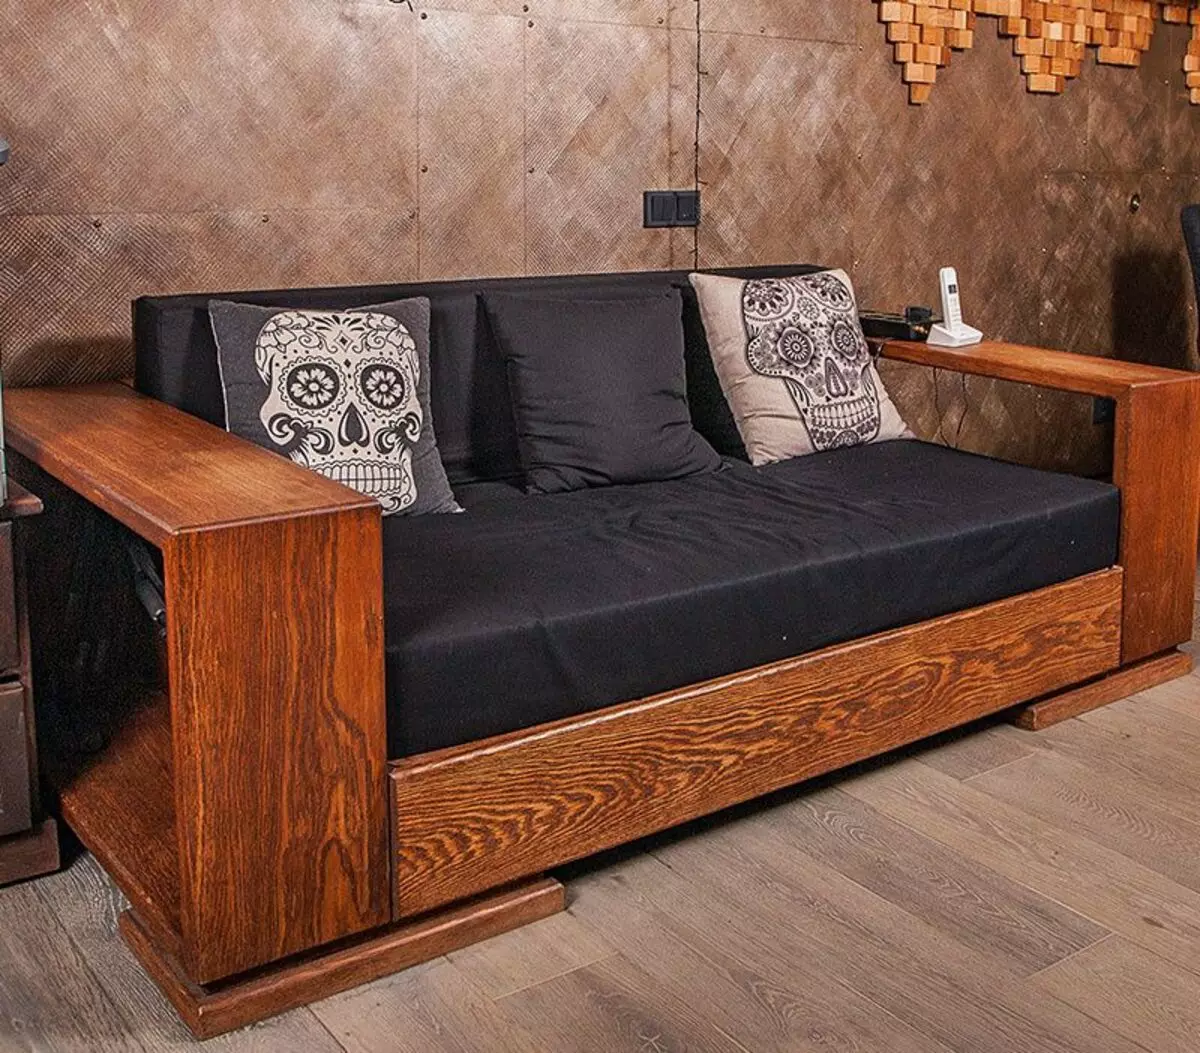 Мебель диваны деревянные. Деревянный диван с подушками. Диван на деревянном каркасе. Диван деревянный из массива. Деревянный диван кровать.